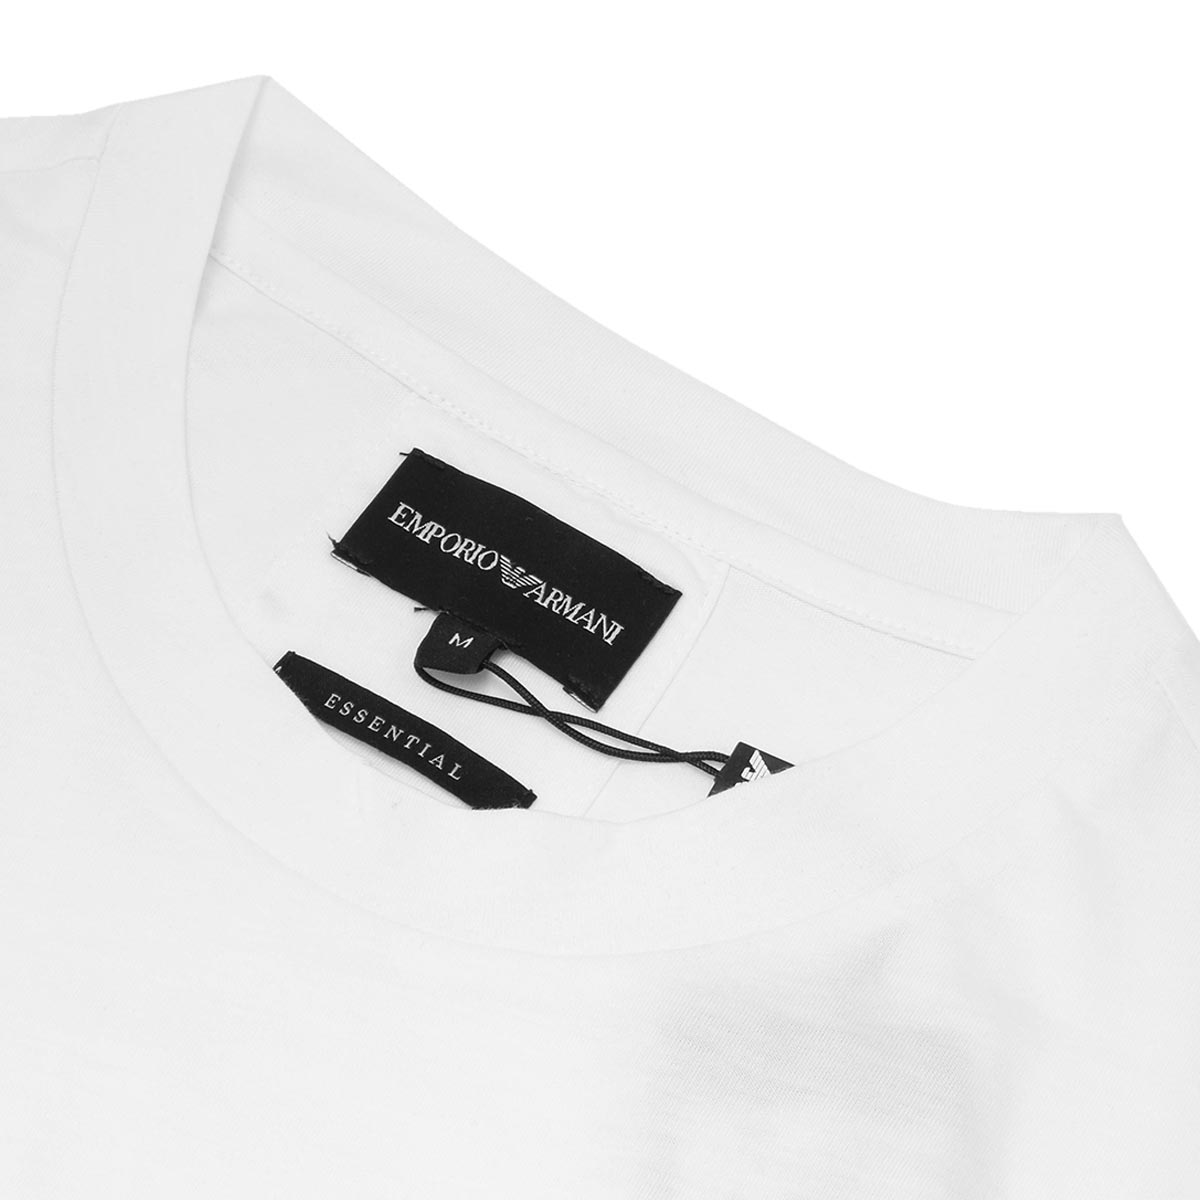 美品 エンポリオアルマーニ EMPORIO ARMANI Tシャツ カットソー ロングスリーブ ロゴ柄 トップス メンズ M ネイビー